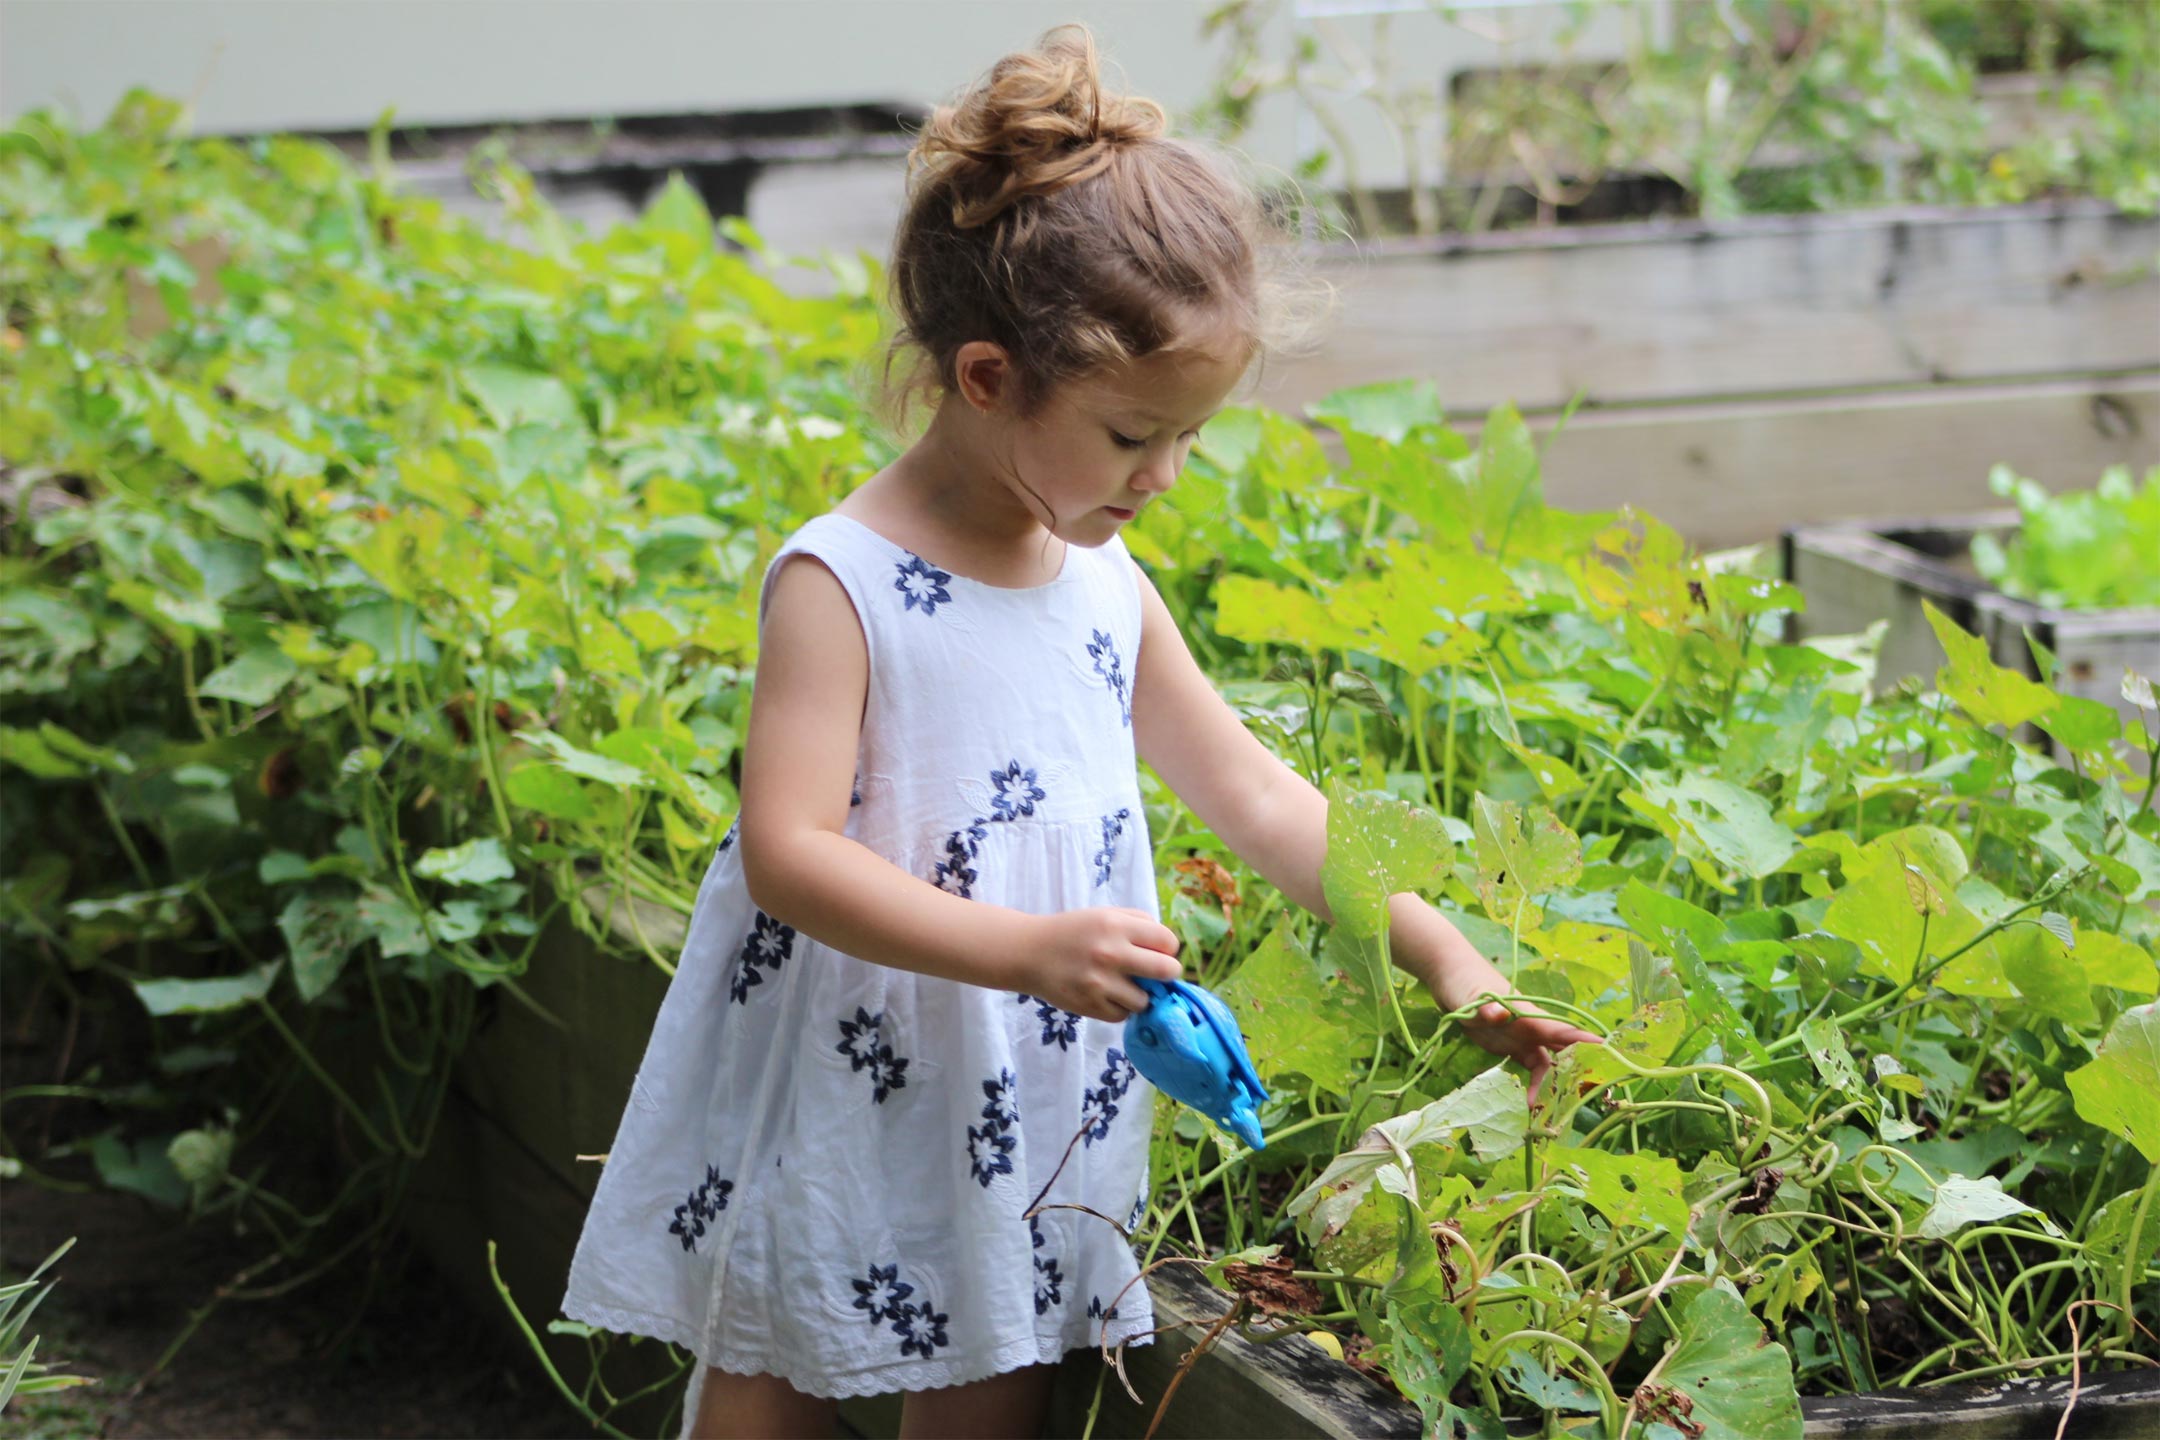 kids-gardening-chores2160